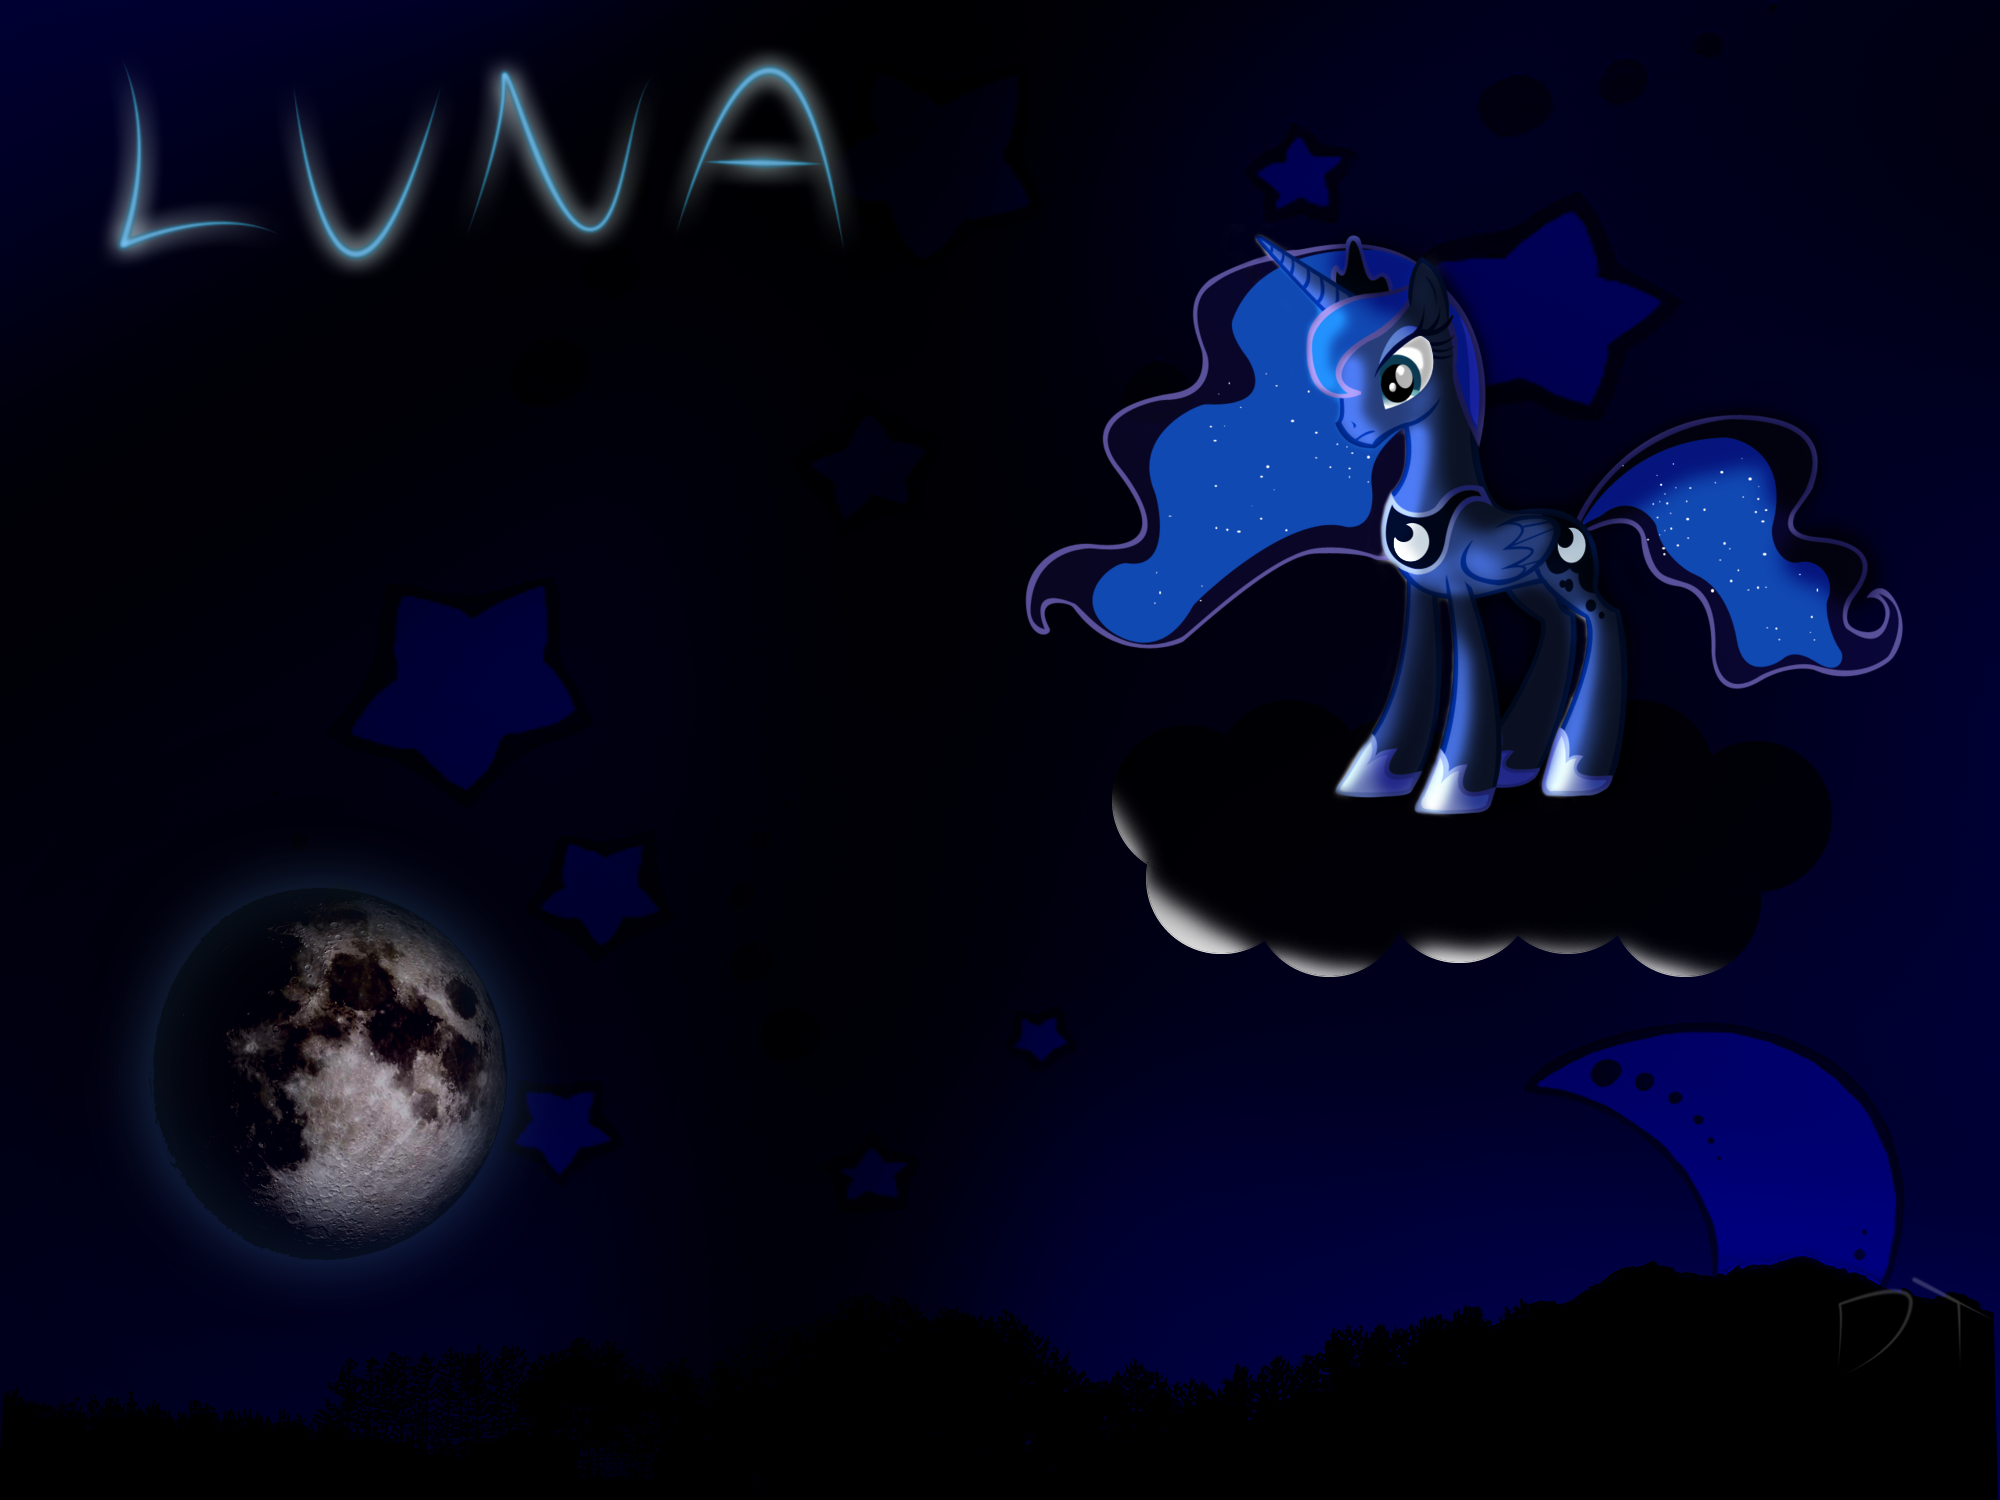 Luna by DT